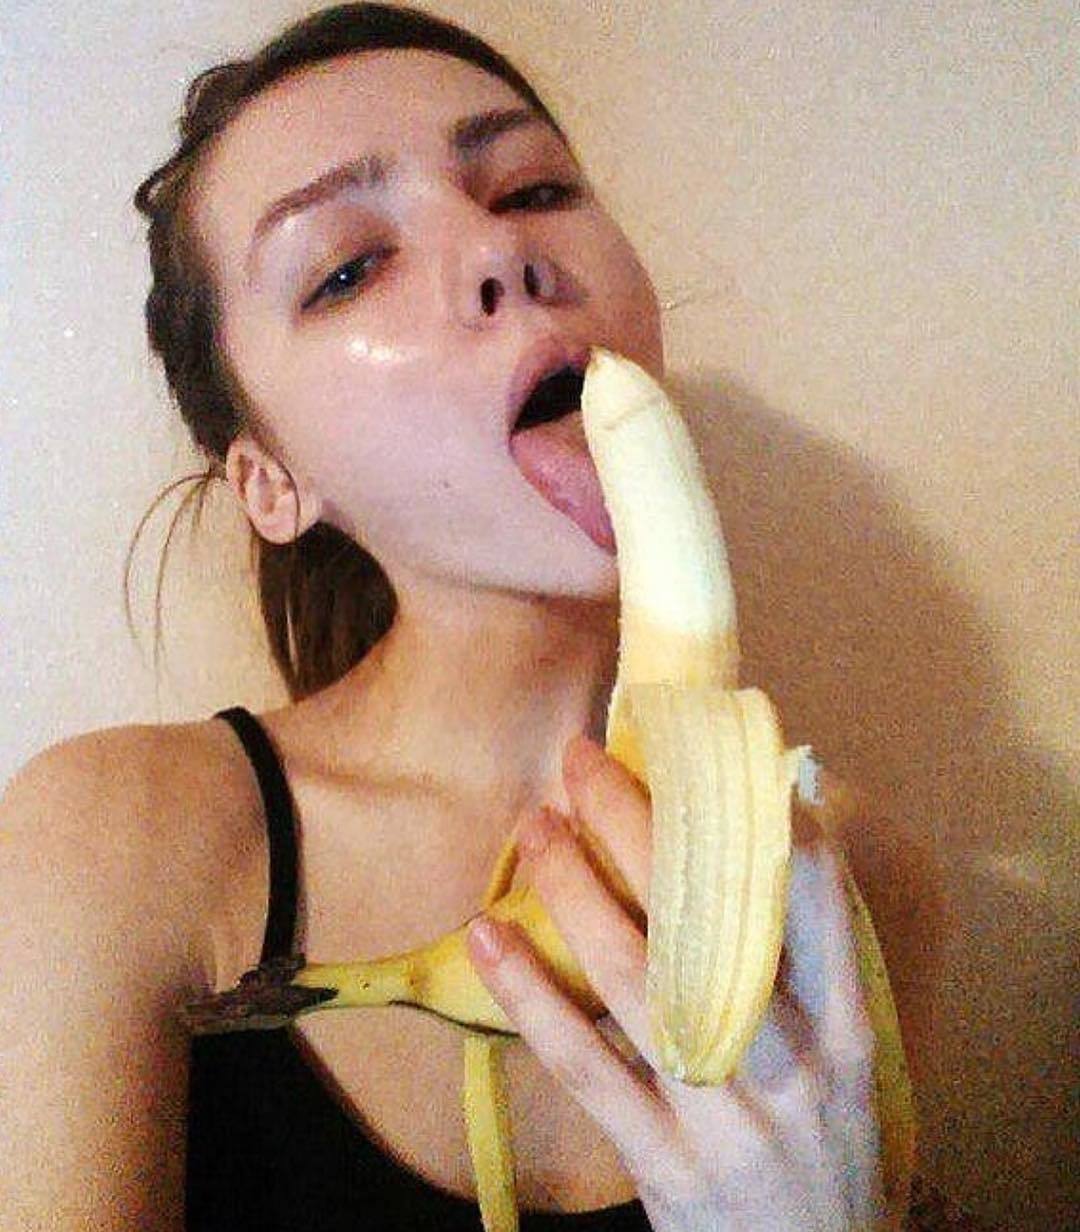 Селфи с бананом во рту